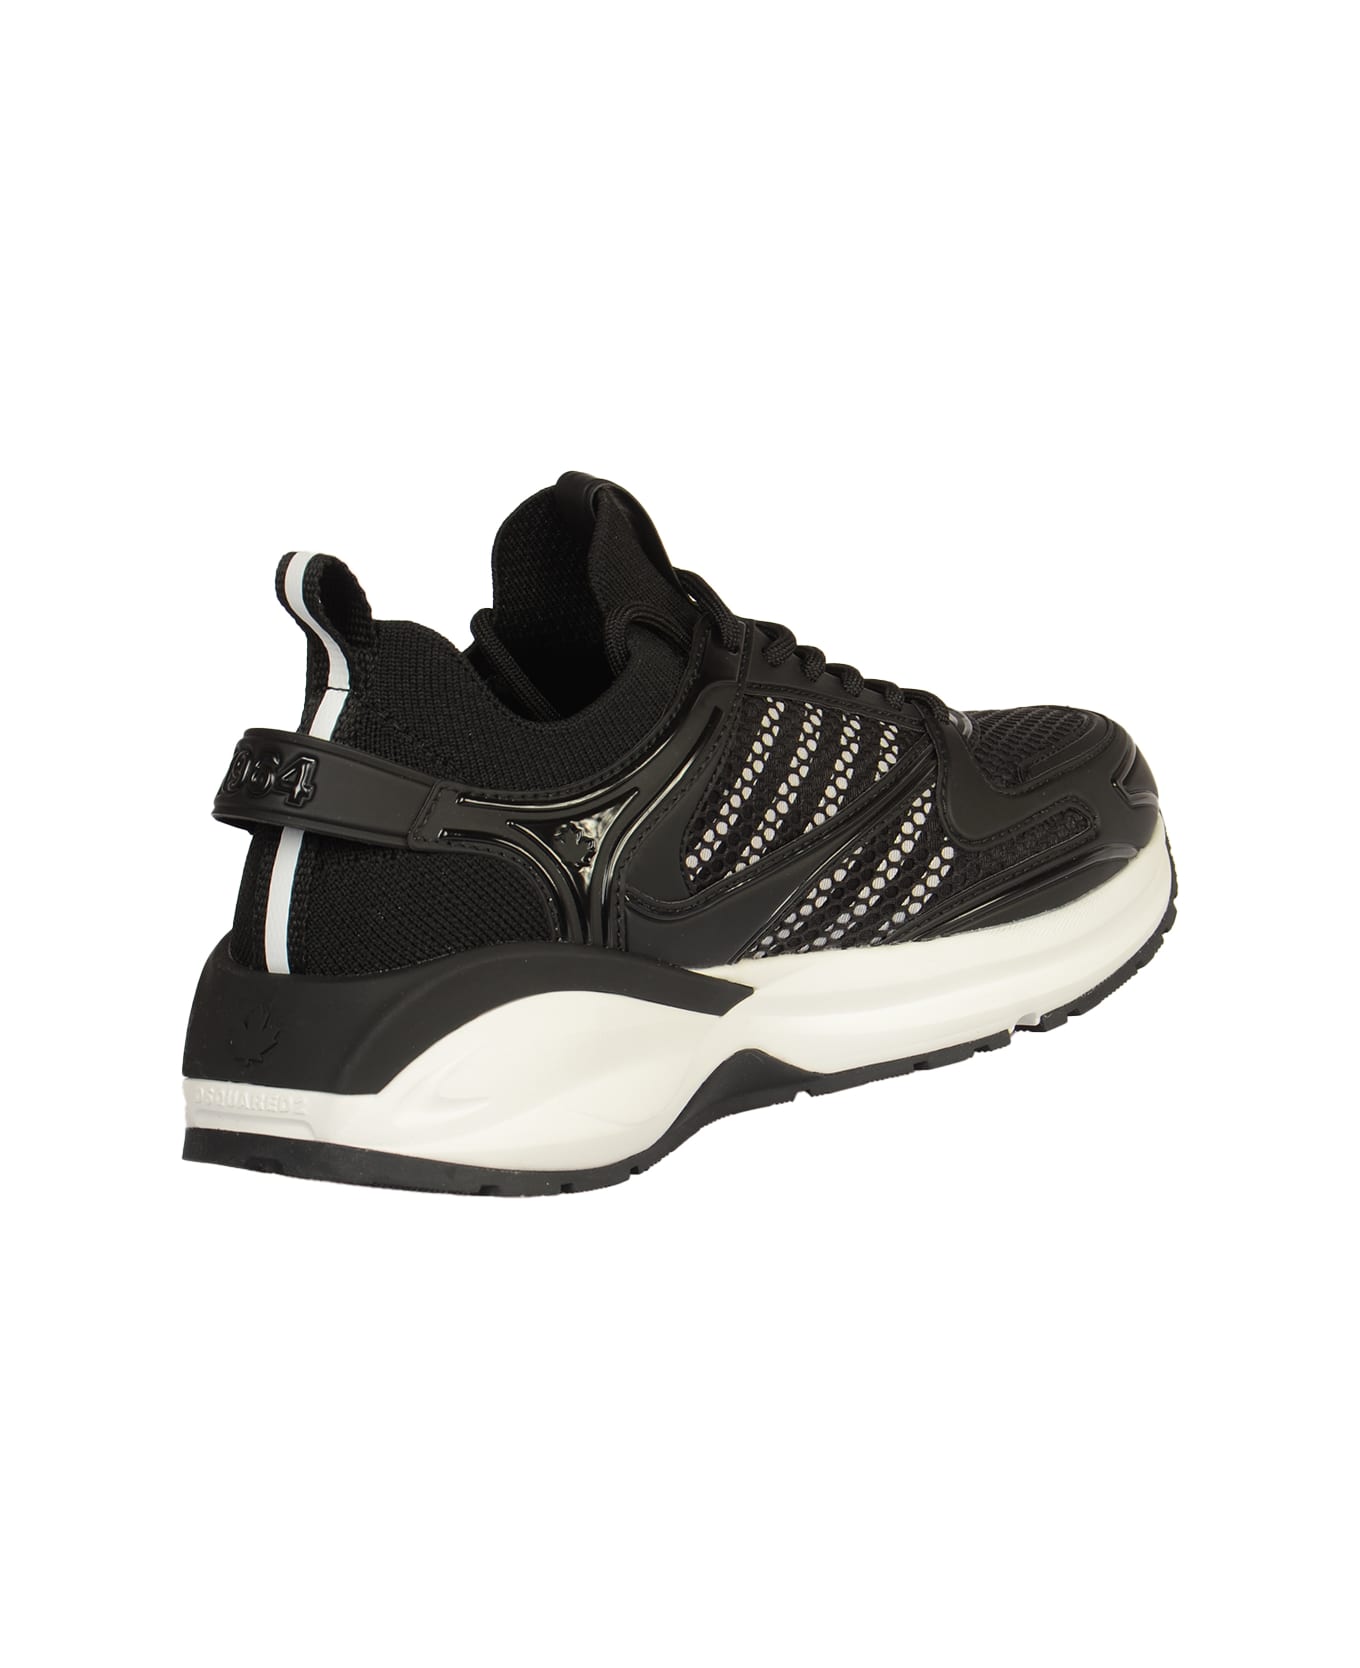 Dsquared2 Dash Sneakers - Black/White